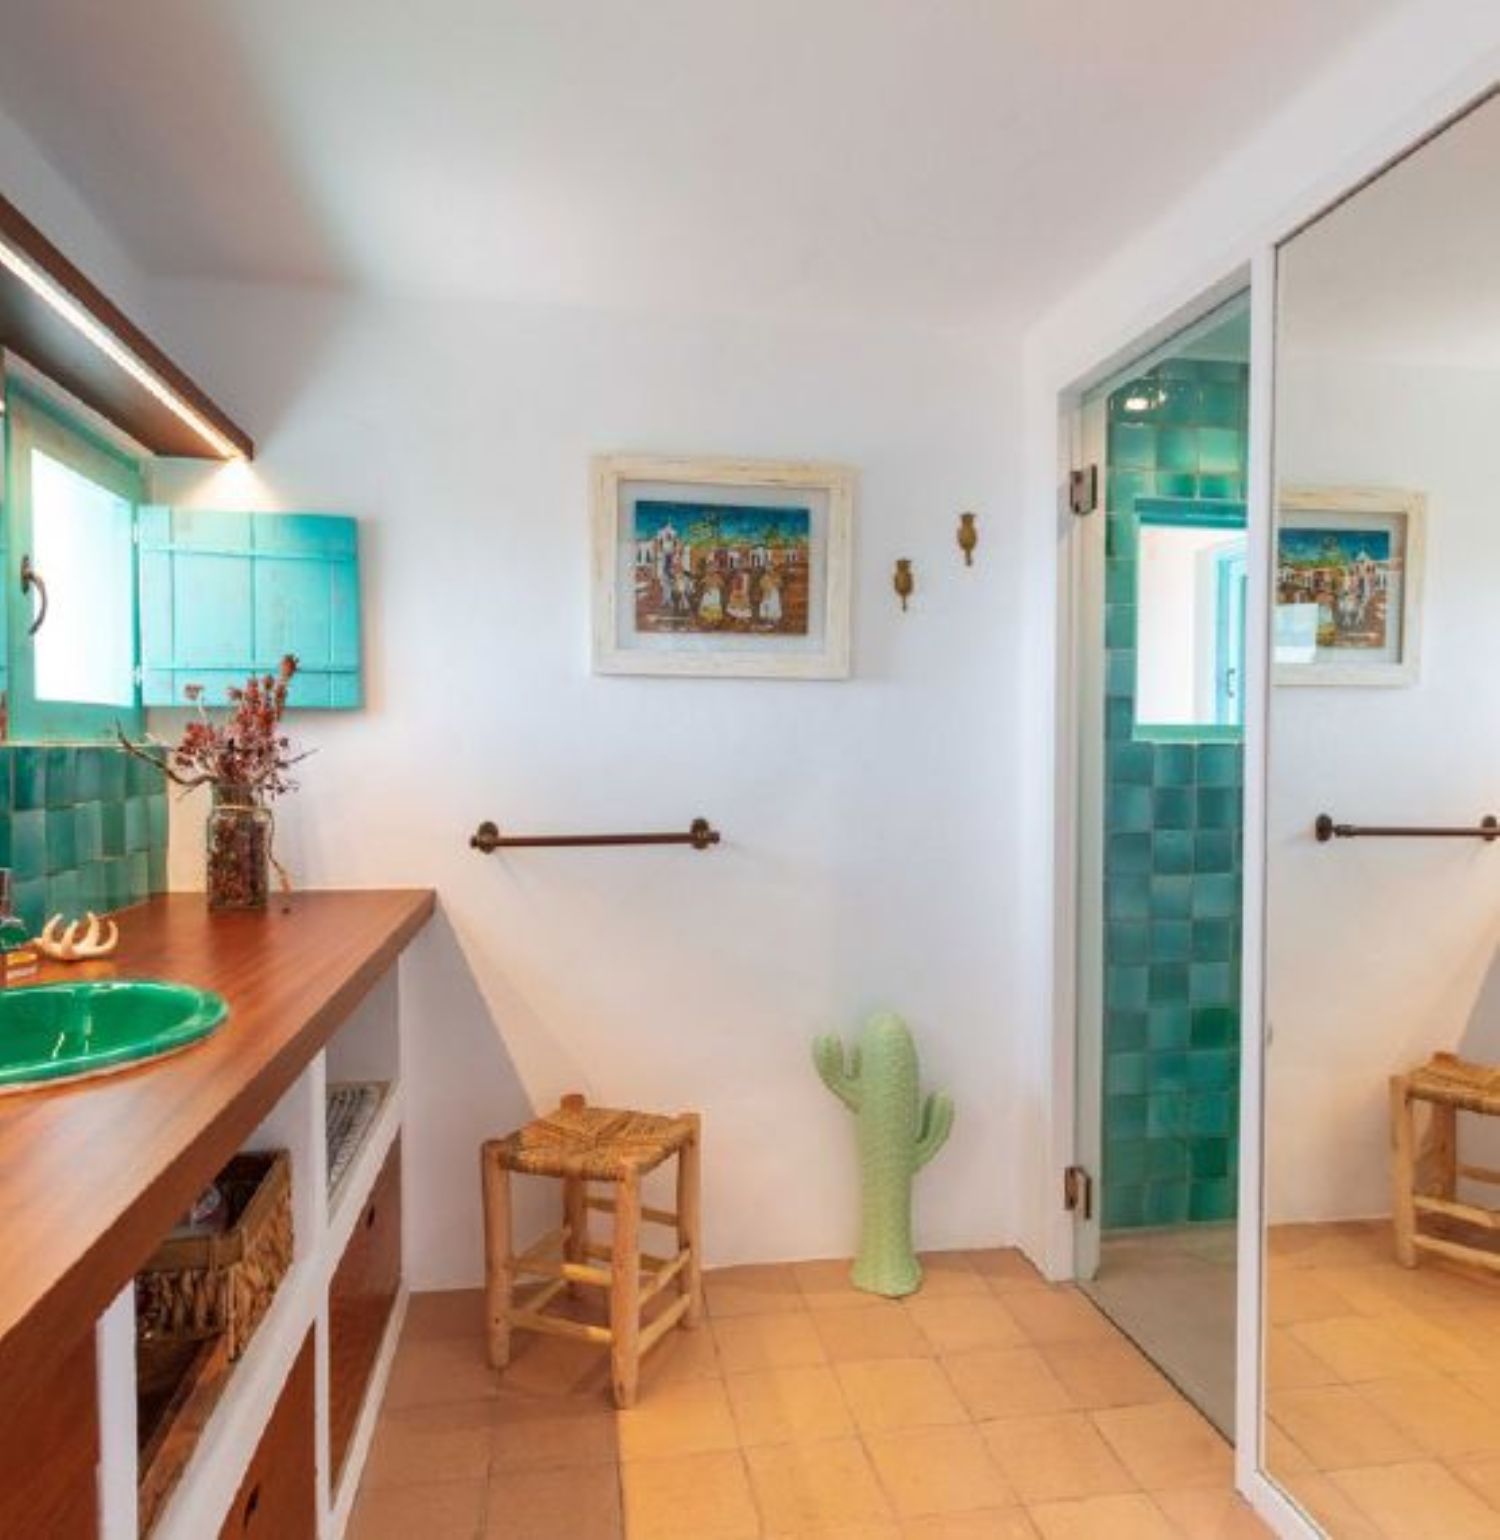 Casa à venda à beira-mar em Pilar de la Mola, em Formentera